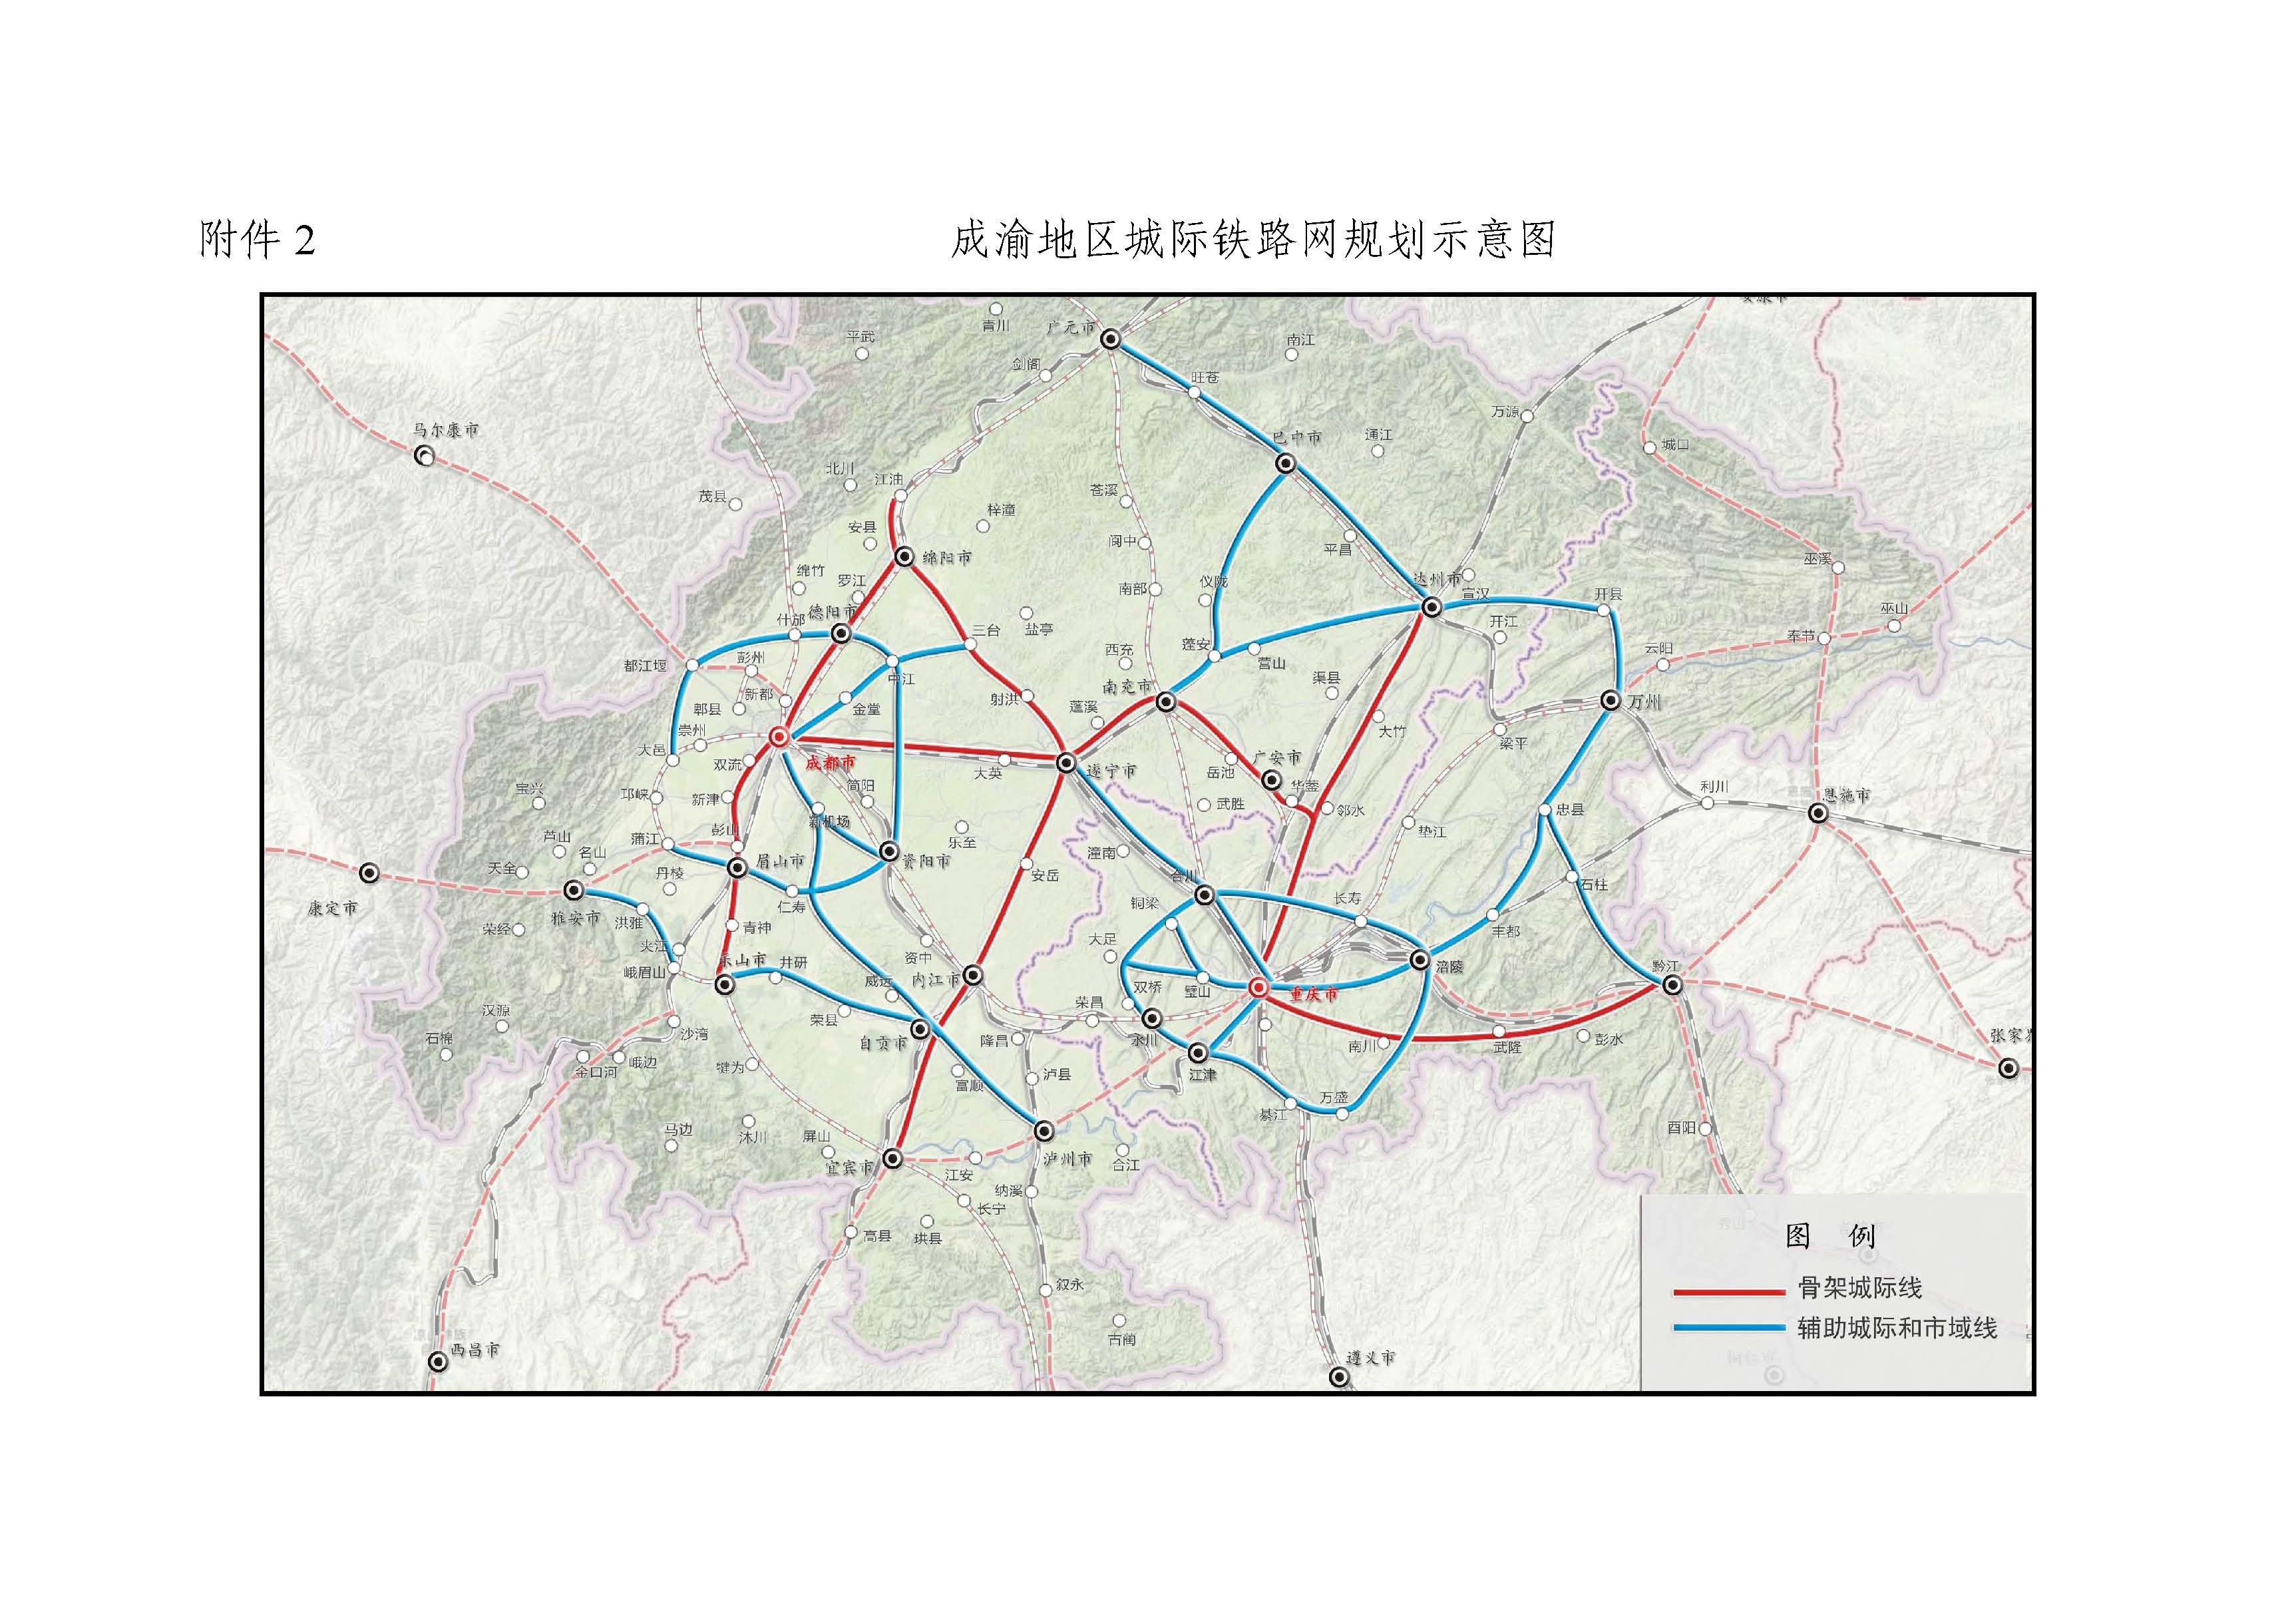 上海轨道交通 2025  威海市城市轨道交通线网及近期建设规划(2019年